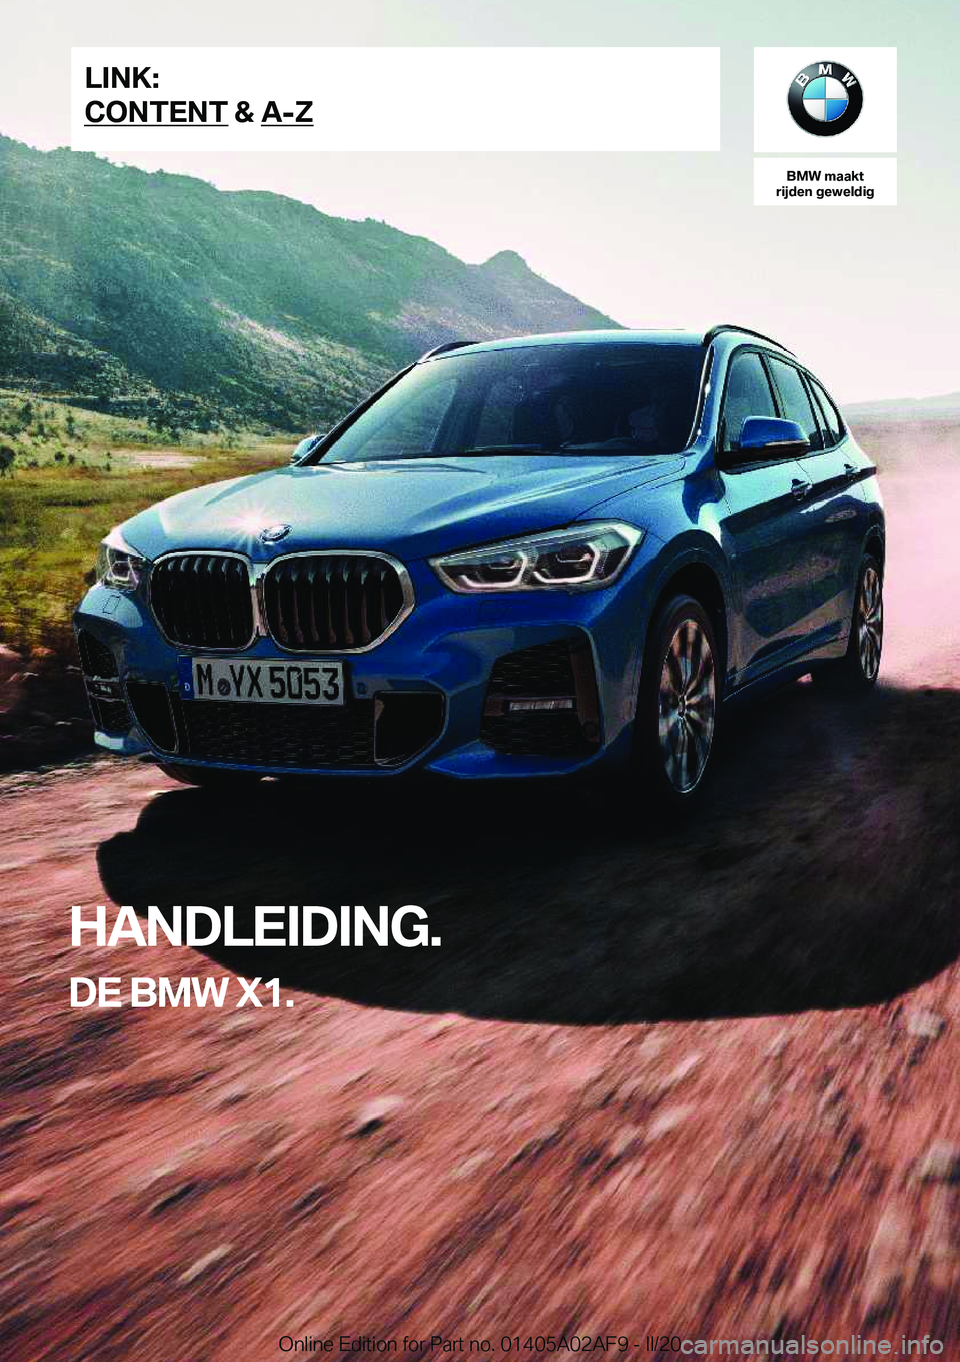 BMW X1 2020  Instructieboekjes (in Dutch) �B�M�W��m�a�a�k�t
�r�i�j�d�e�n��g�e�w�e�l�d�i�g
�H�A�N�D�L�E�I�D�I�N�G�.
�D�E��B�M�W��X�1�.�L�I�N�K�:
�C�O�N�T�E�N�T��&��A�-�Z�O�n�l�i�n�e��E�d�i�t�i�o�n��f�o�r��P�a�r�t��n�o�.��0�1�4�0�5�A